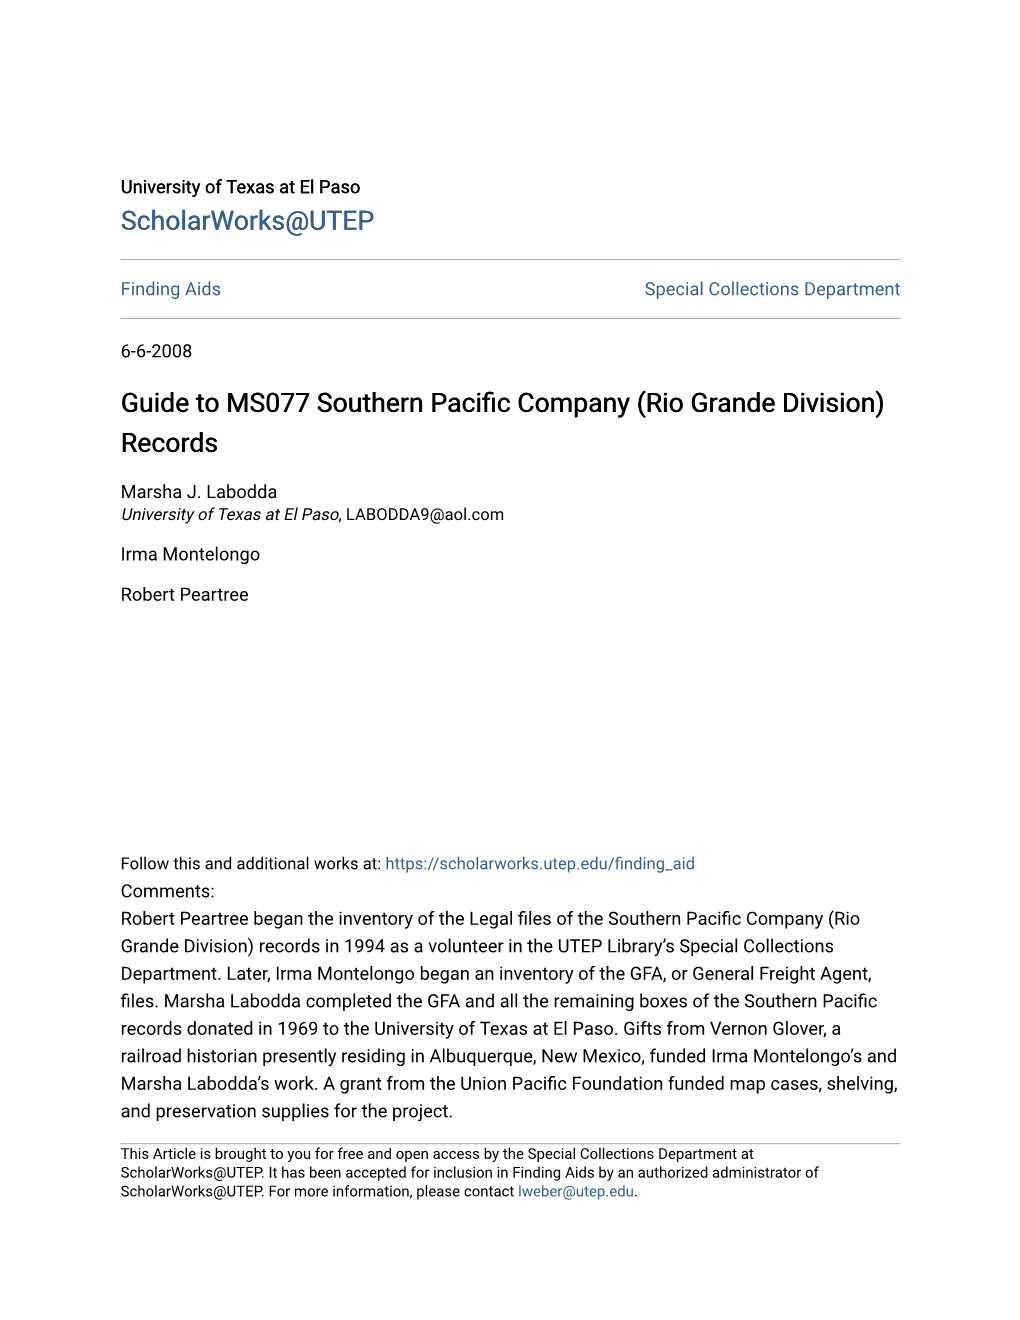 Guide to MS077 Southern Pacific Company (Rio Grande Division) Records